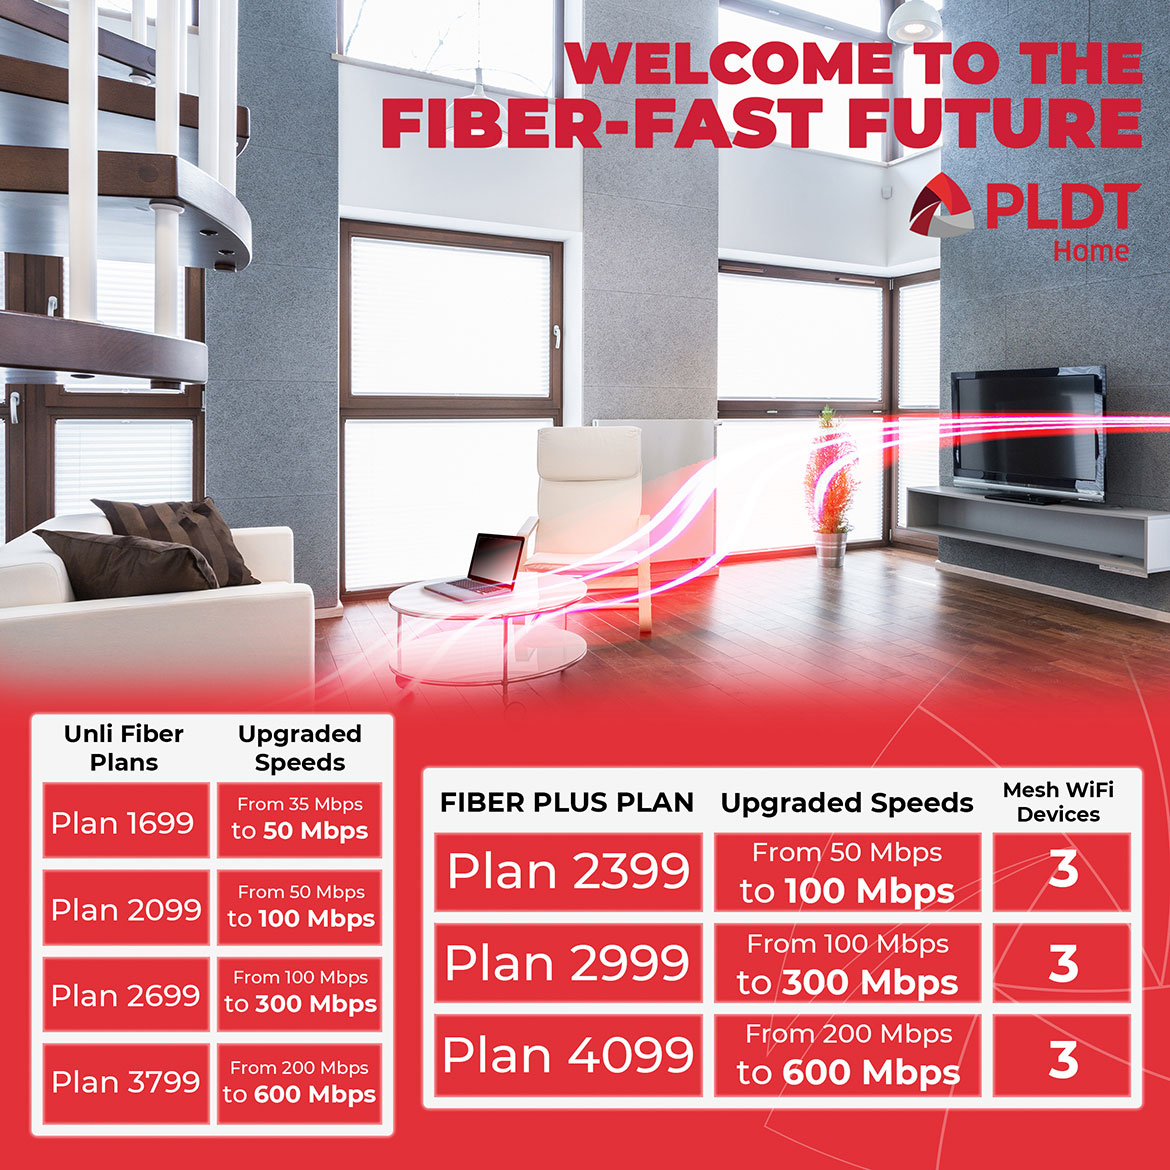 PLDT-Home-Fiber-upgrades-resize